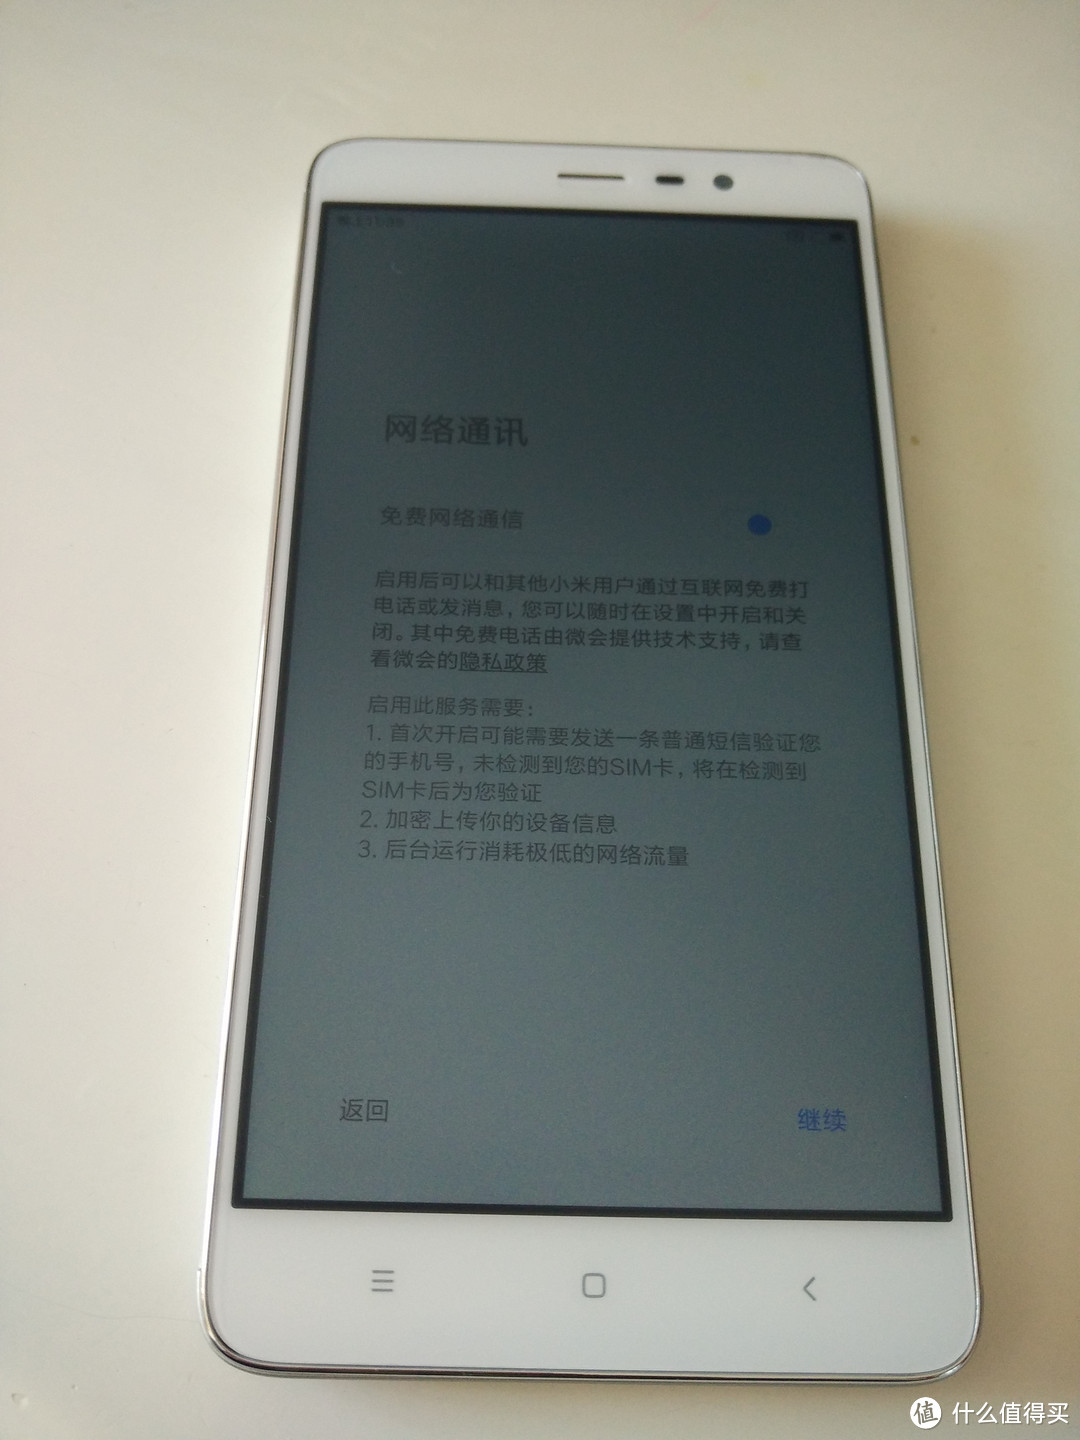 父爱如山：送给父亲大人的红米Note3 全网通 智能手机